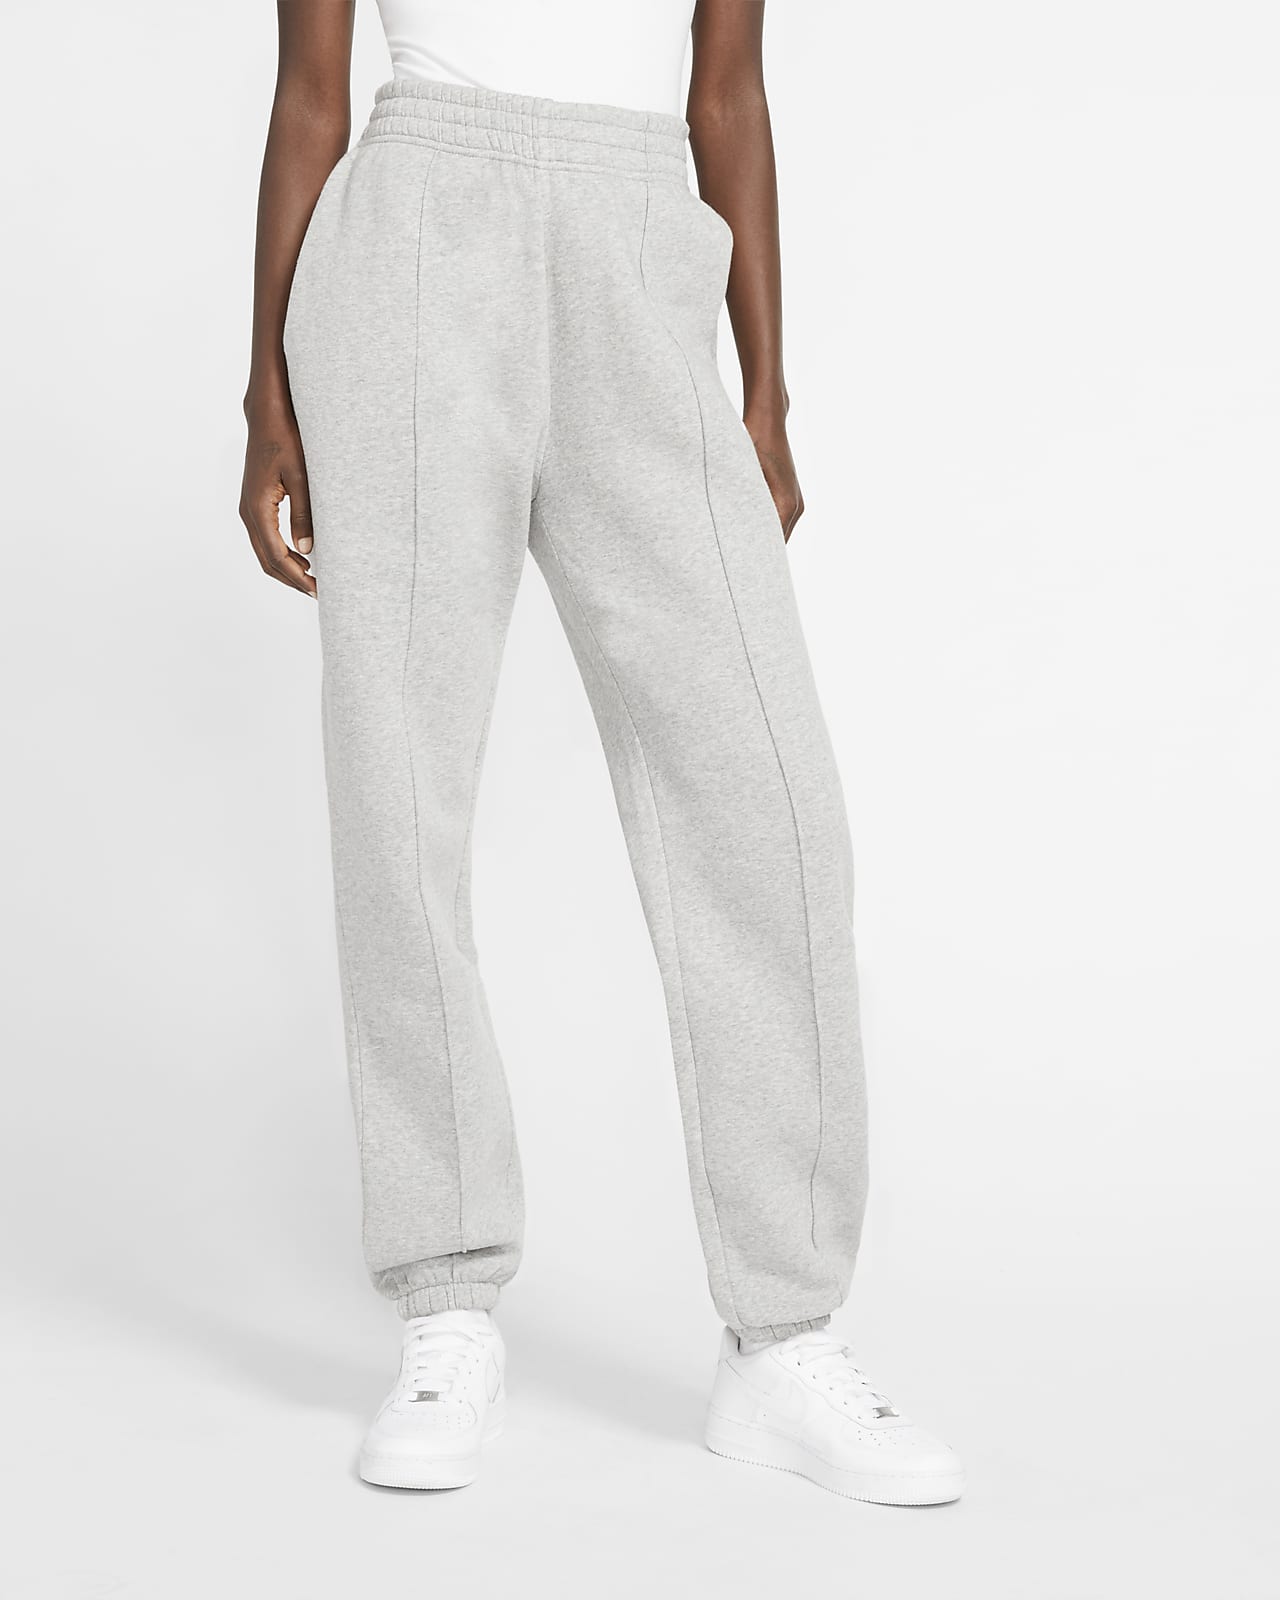 Pantaloni in fleece Nike Sportswear Essential - Donna. Nike IT